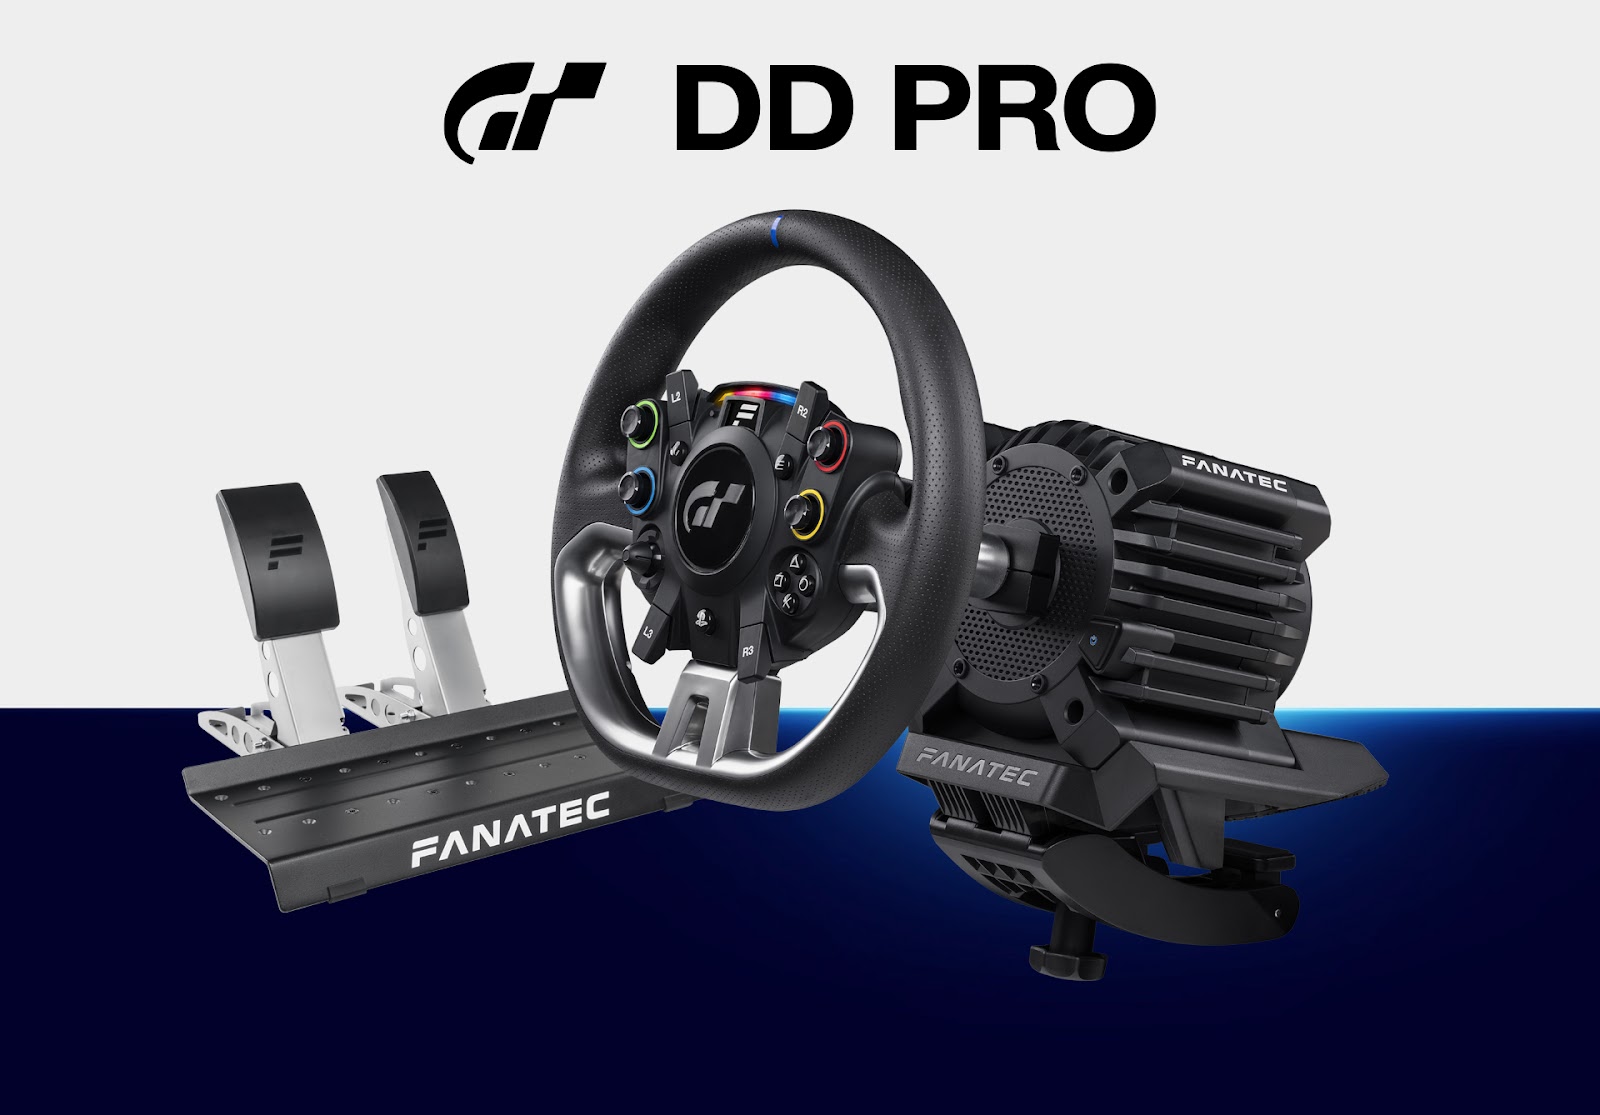 Fanatec Gran Turismo DD Pro: Vô lăng cao cấp cho game đua xe PS5, giá 700 USD